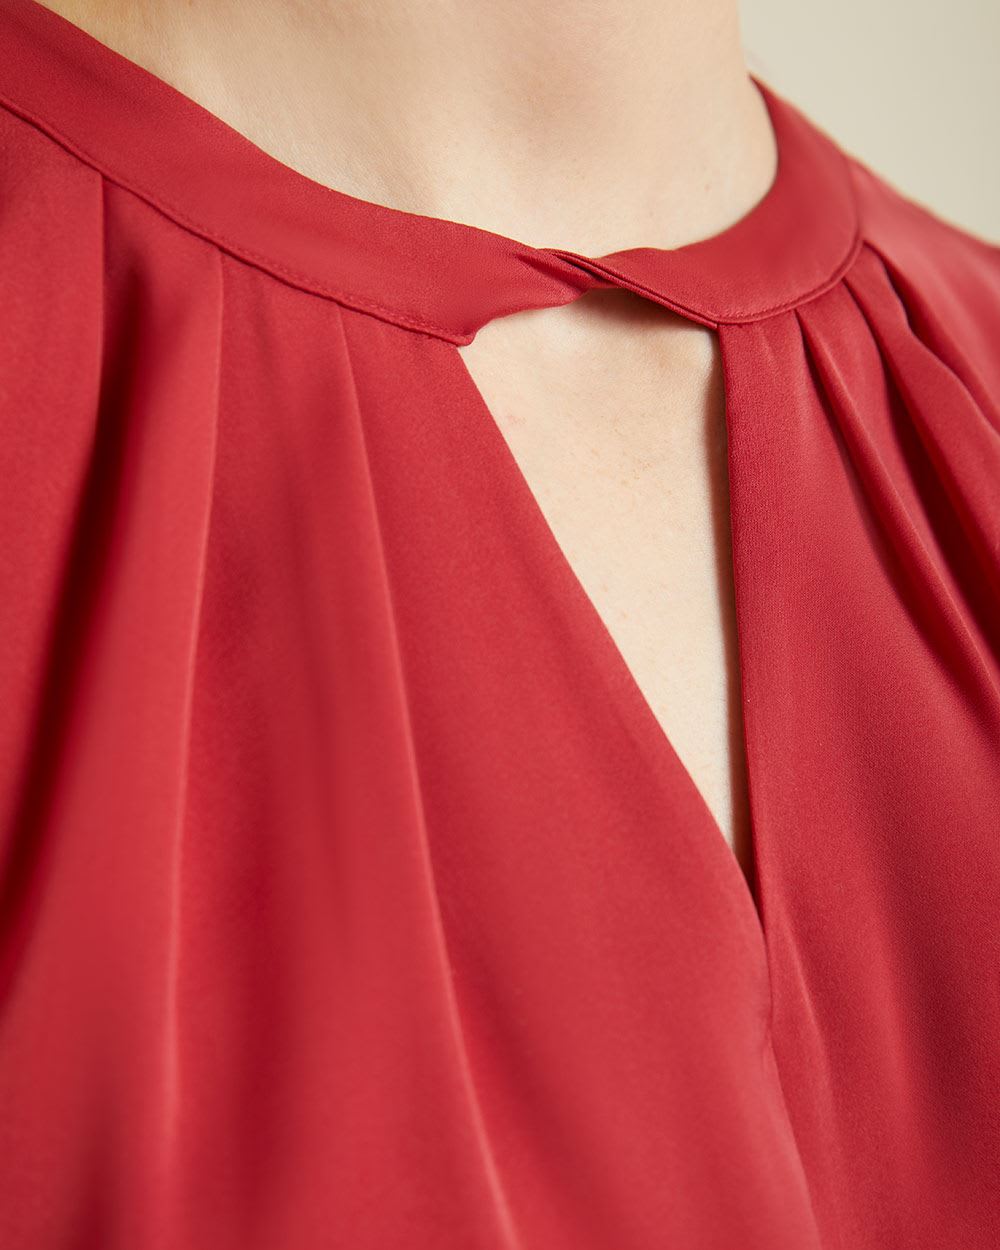 Sleeveless satin blouse with keyhole neck | RW&CO.